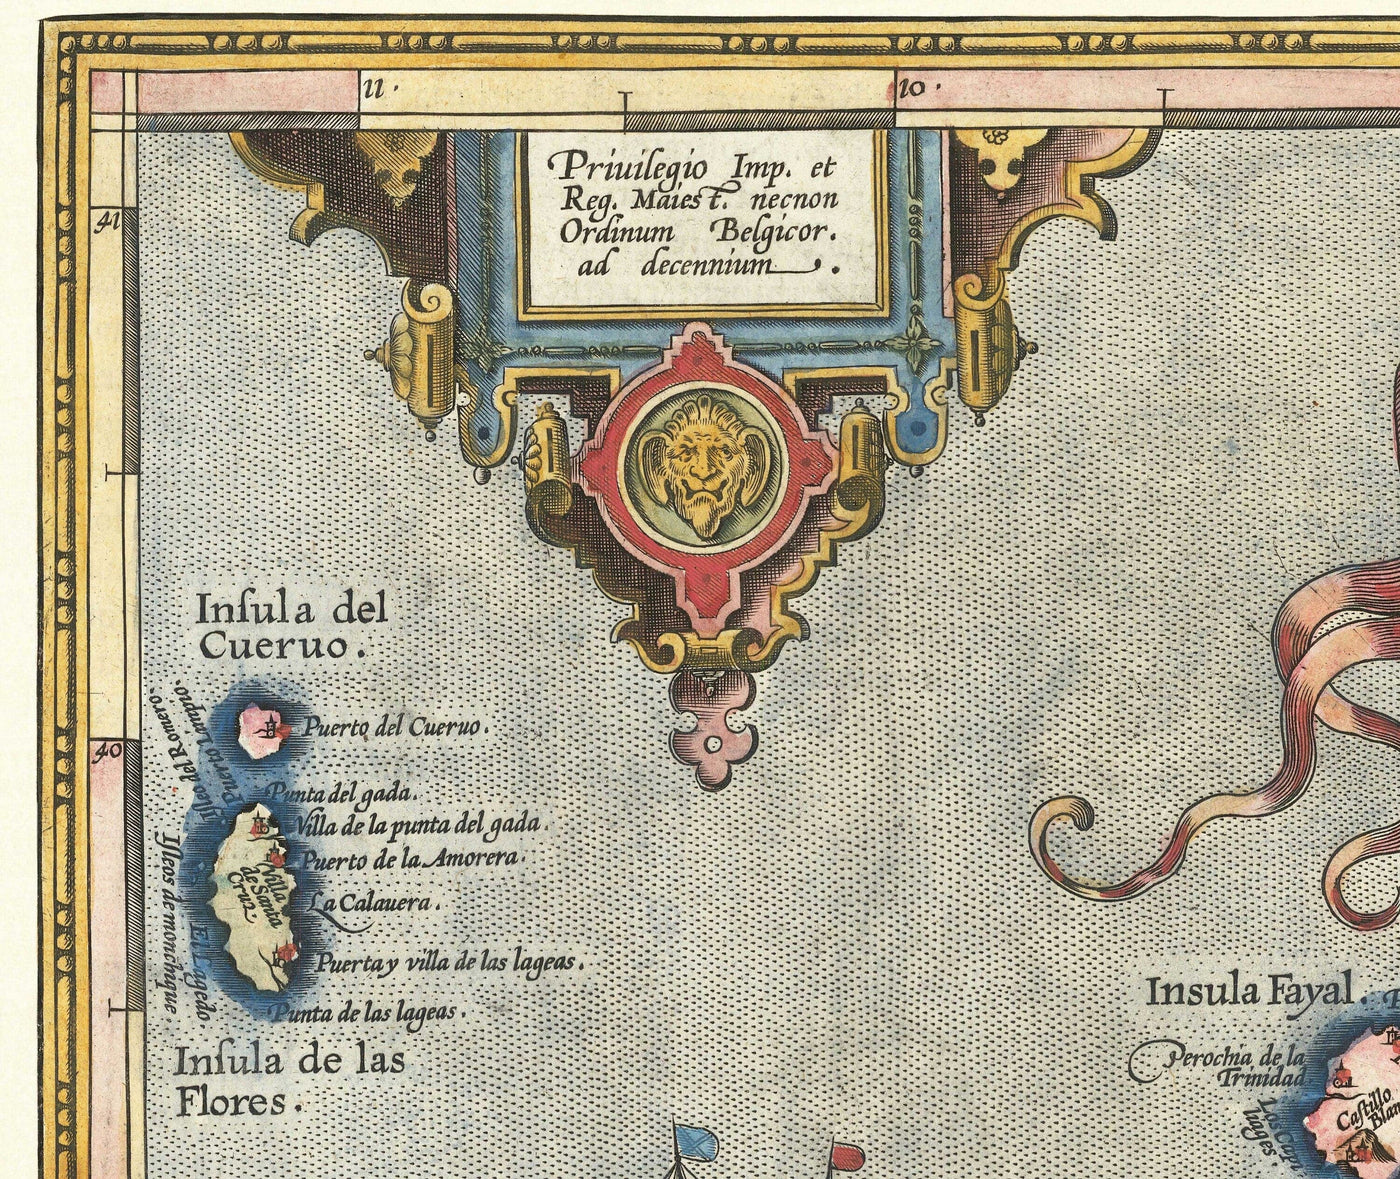 Mapa antiguo de las Azores por Abraham Ortelius, 1573 - Sao Miguel, Pico, Terceira, São Jorge, Faial, Portugal, Atlántico